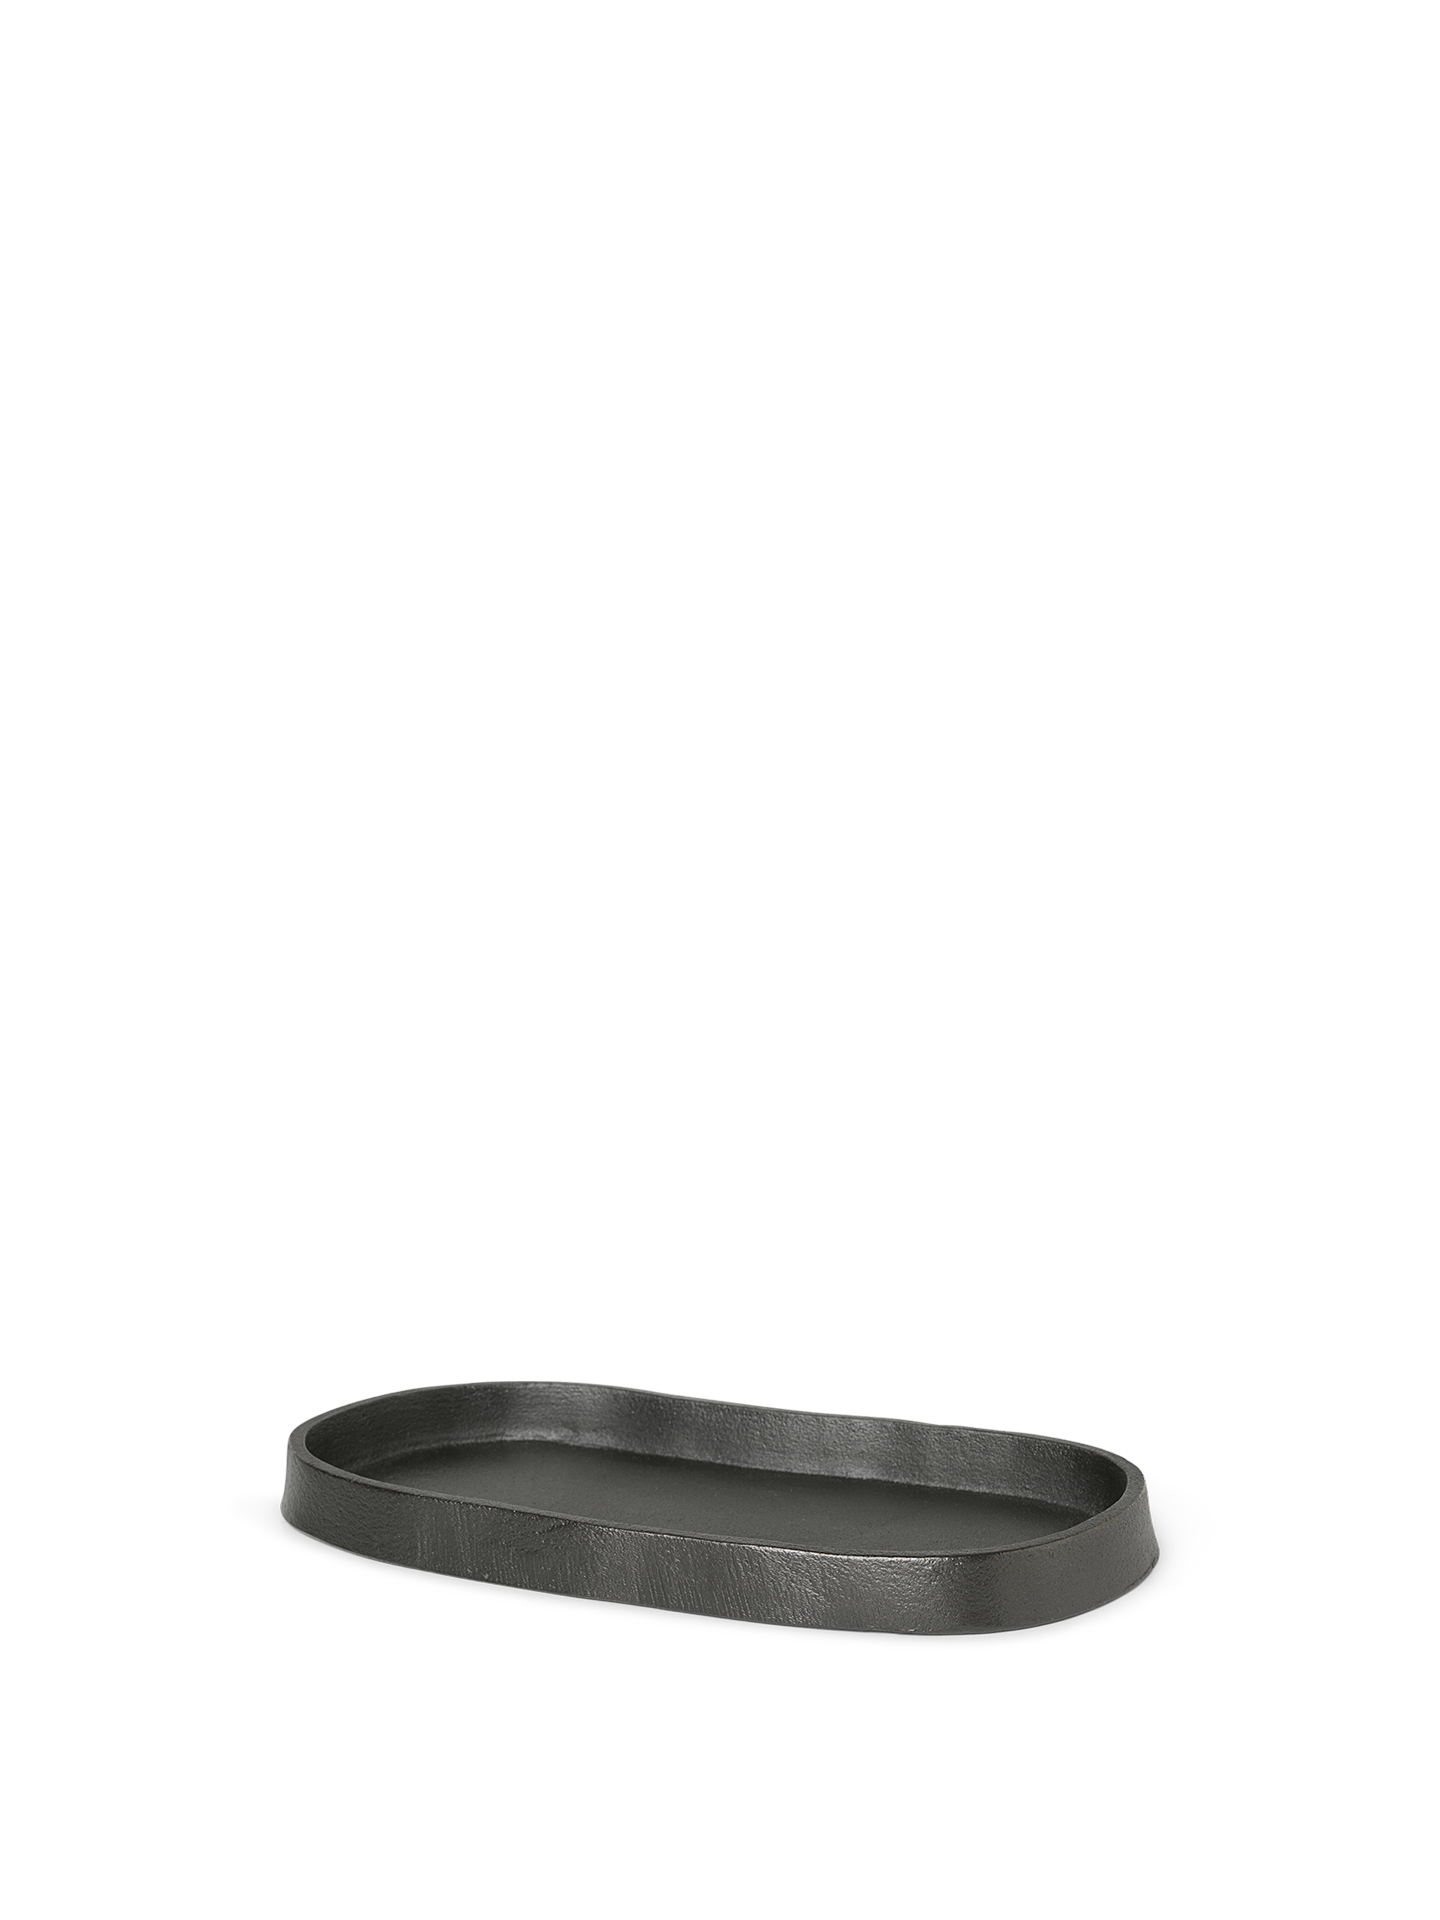 Yama Tray - Oval - Blackened Aluminium